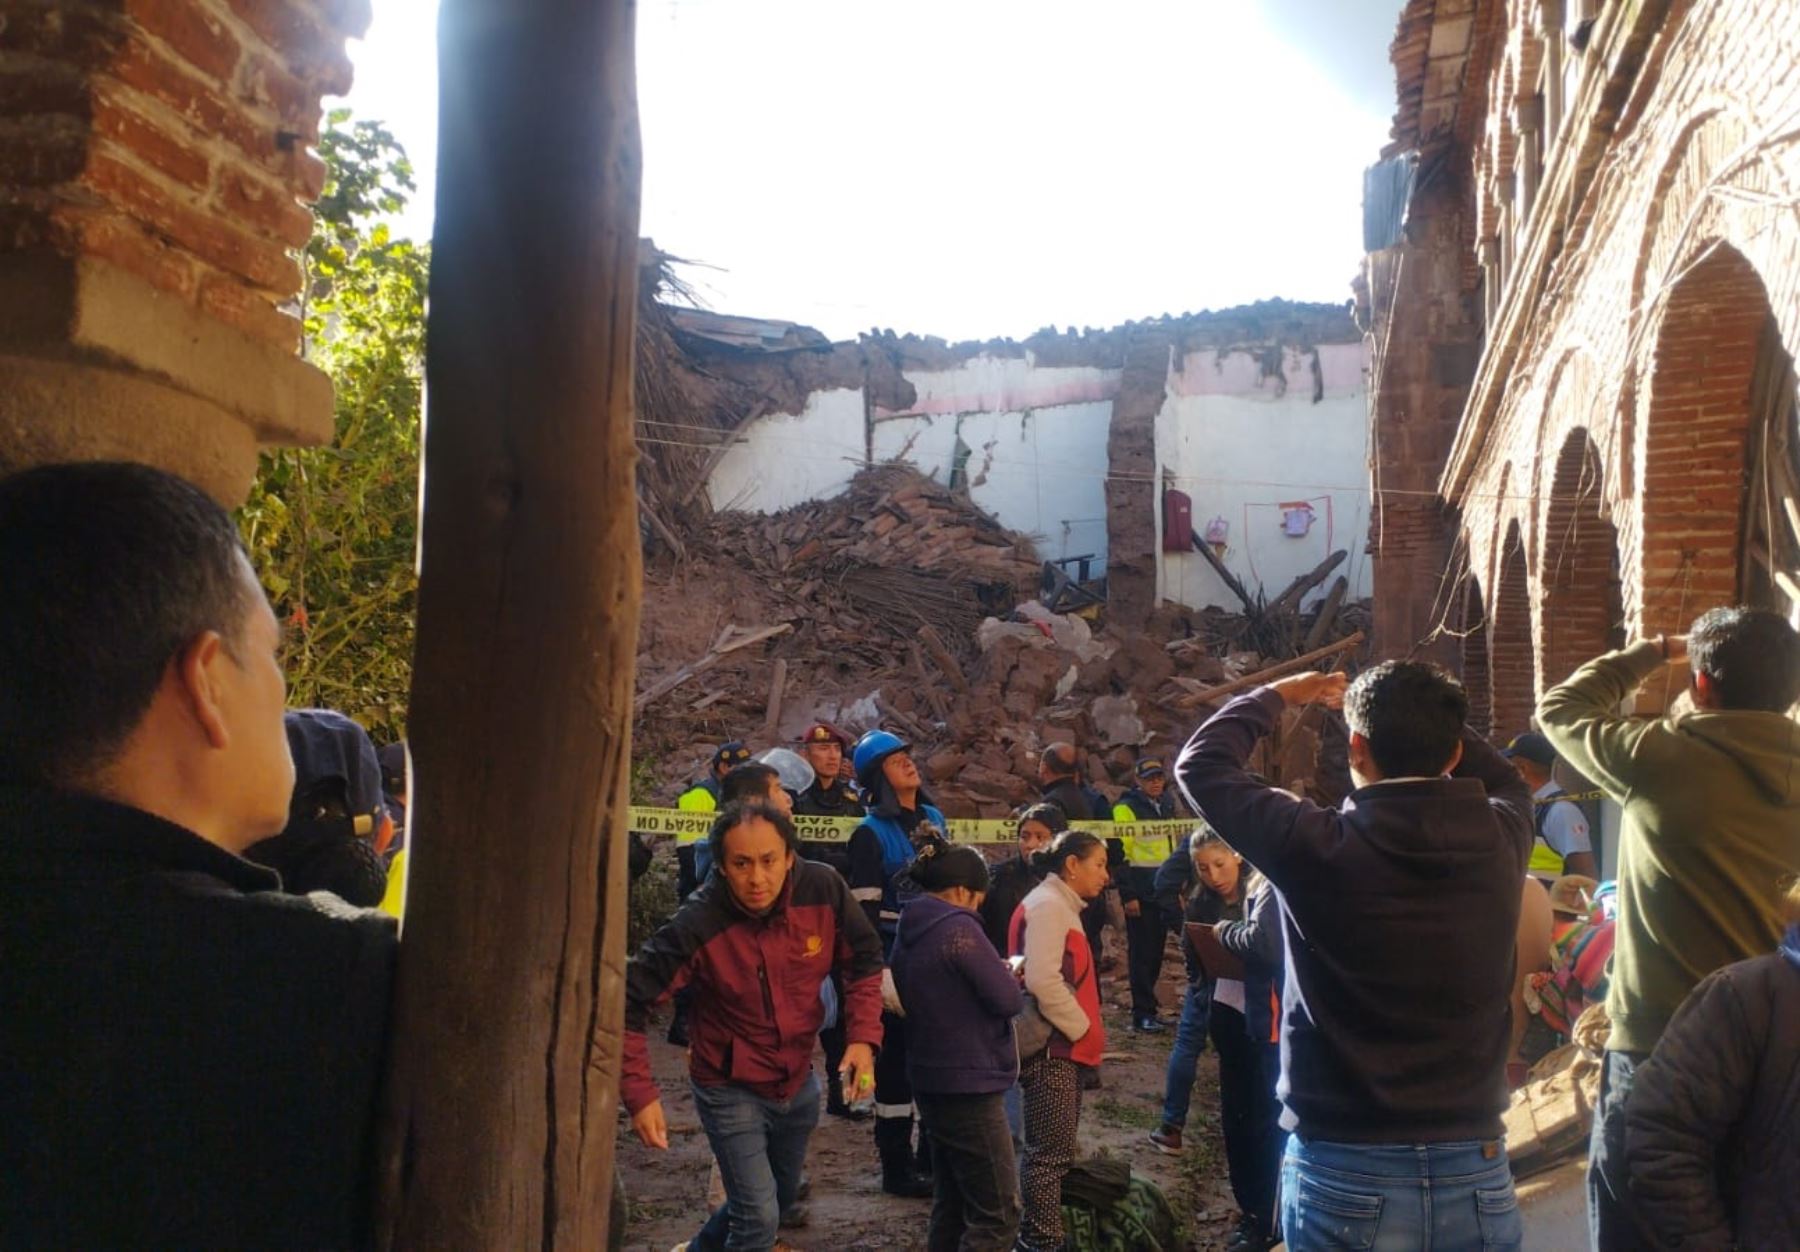 Al menos 20 casonas antiguas están en riesgo de colapso en centro histórico de la ciudad imperial, informó la Dirección de Cultura de Cusco. ANDINA/Percy Hurtado Santillán